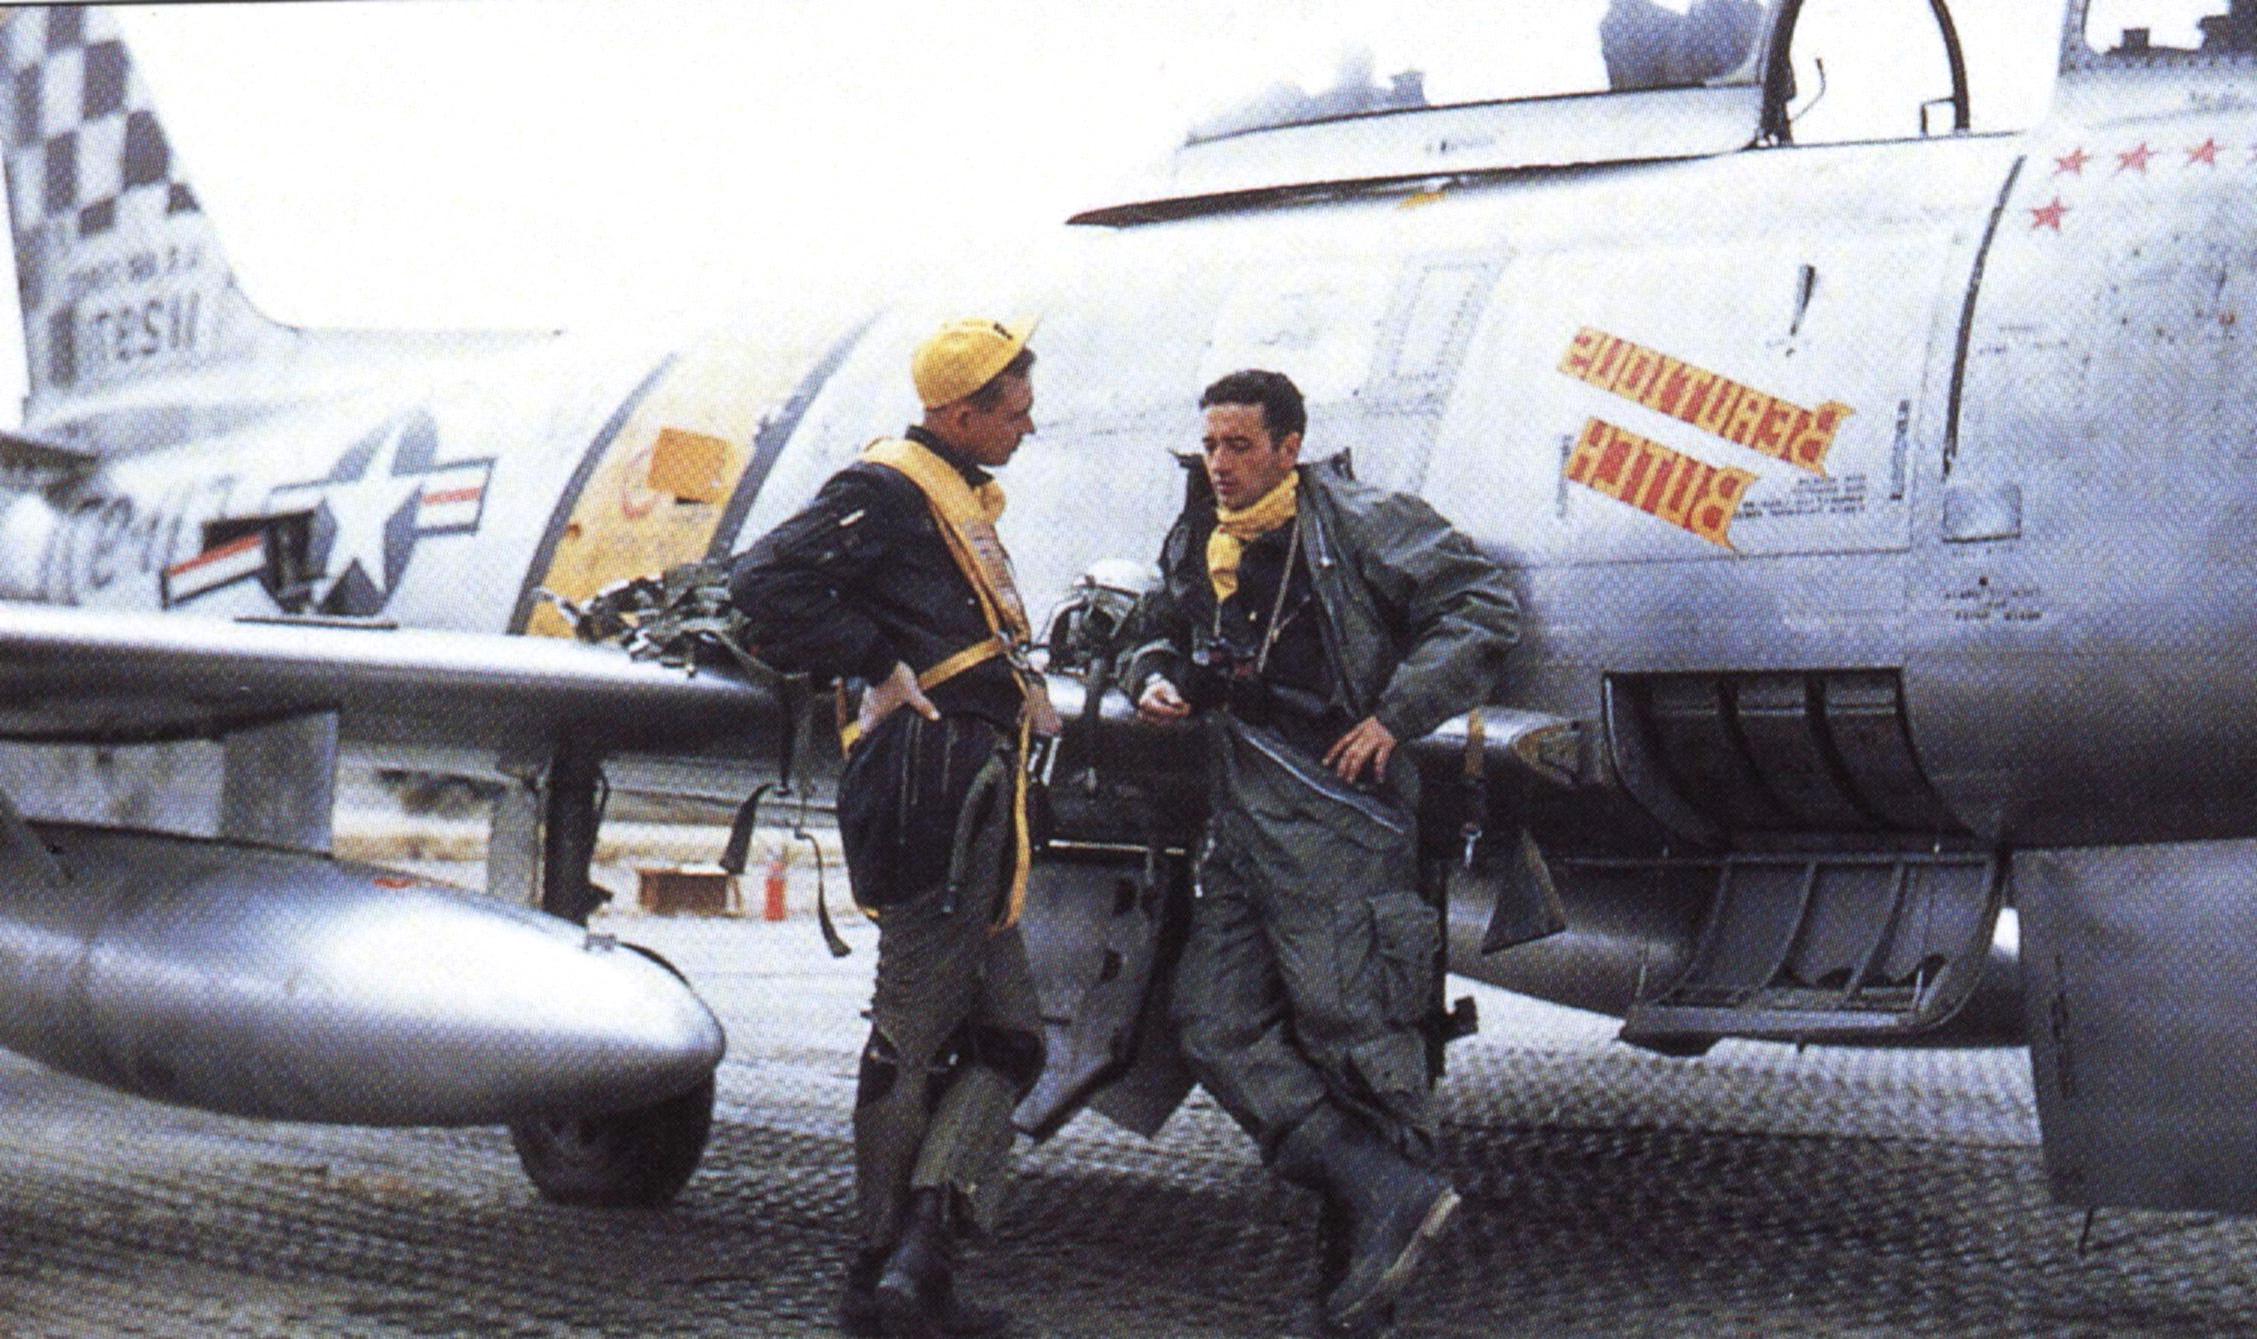 Hình ảnh về phi công - đại úy Joseph C. McConnell cùng đại úy Harold Fischer